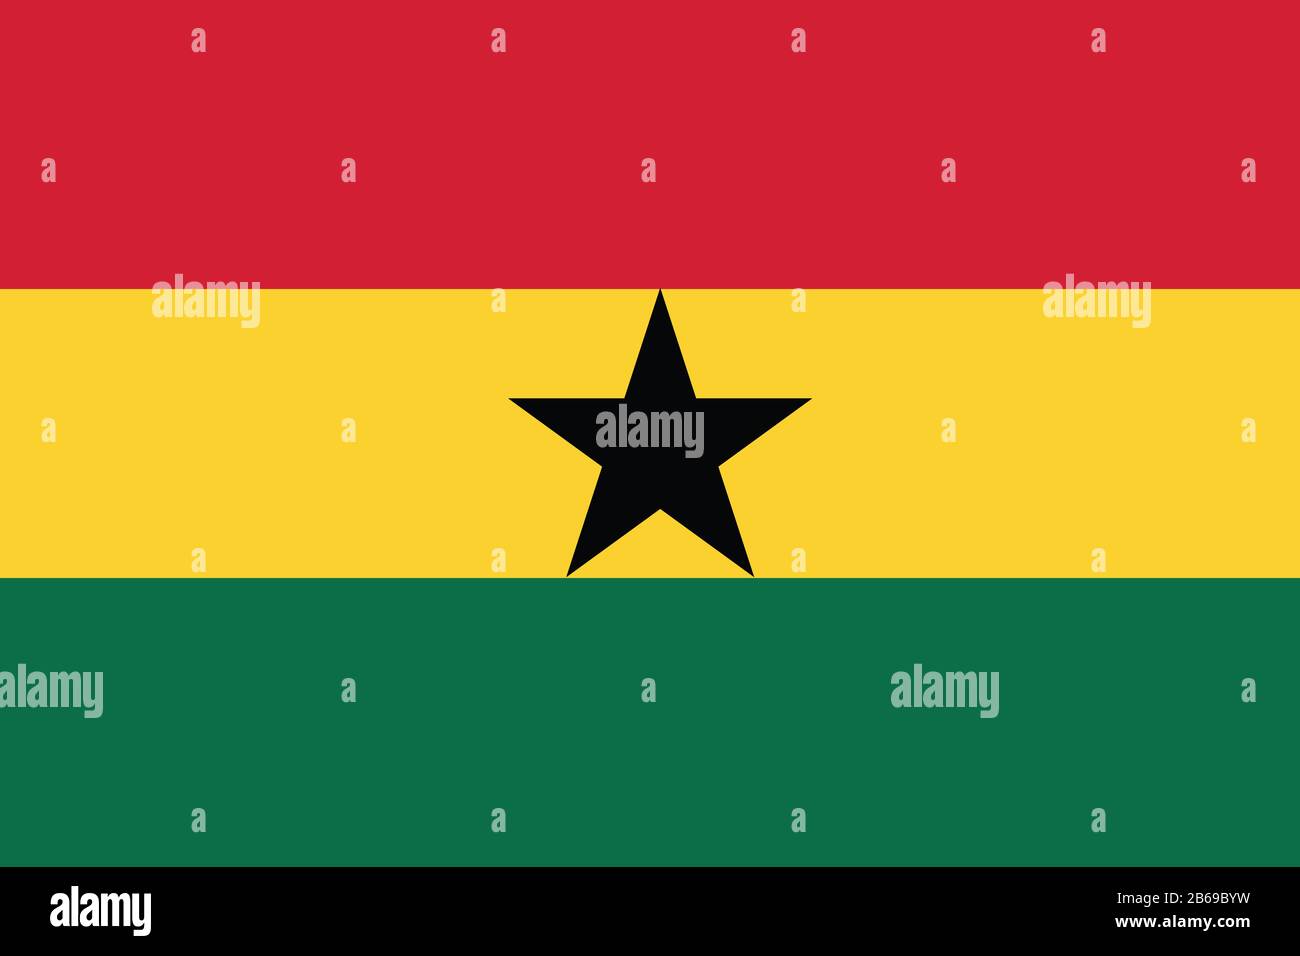 Flagge Ghanas - Standardverhältnis der ghanaischen Flagge - True RGB-Farbmodus Stockfoto